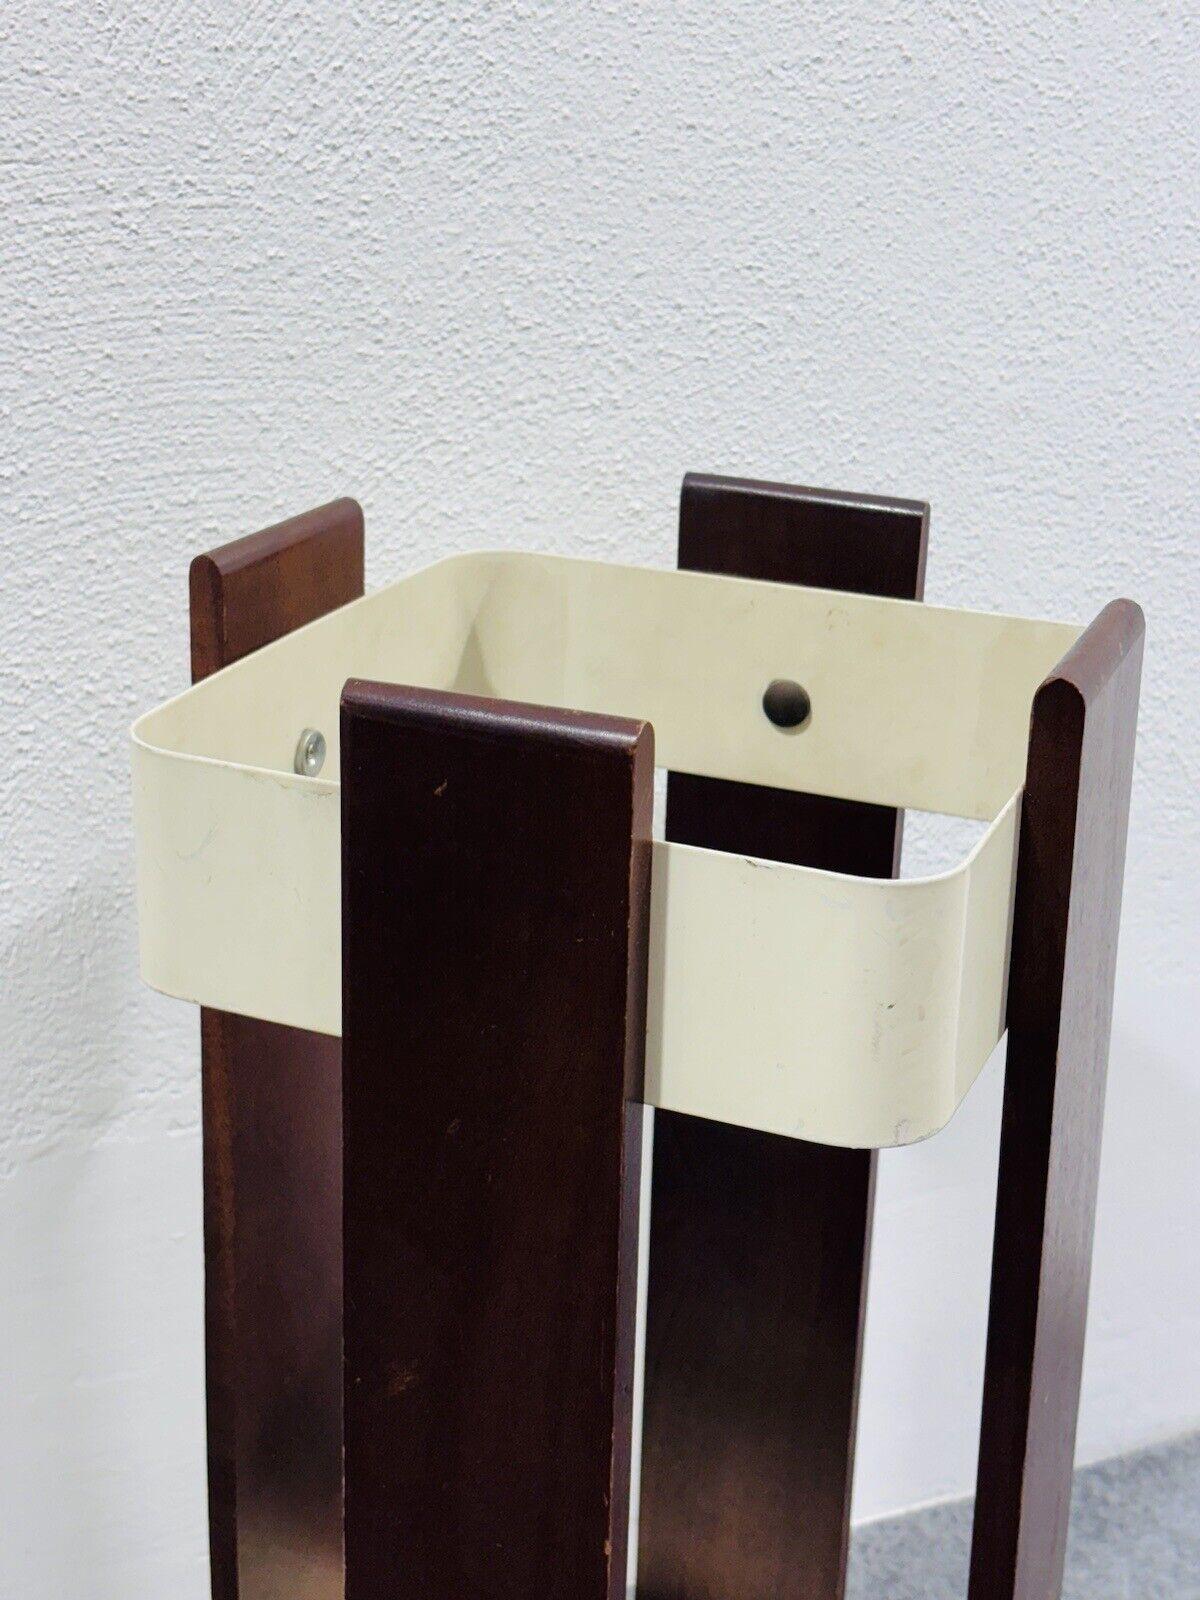 Wood Artek Alvar Aalto Umbrella Stand Design 1970 Scandinavian Modernism